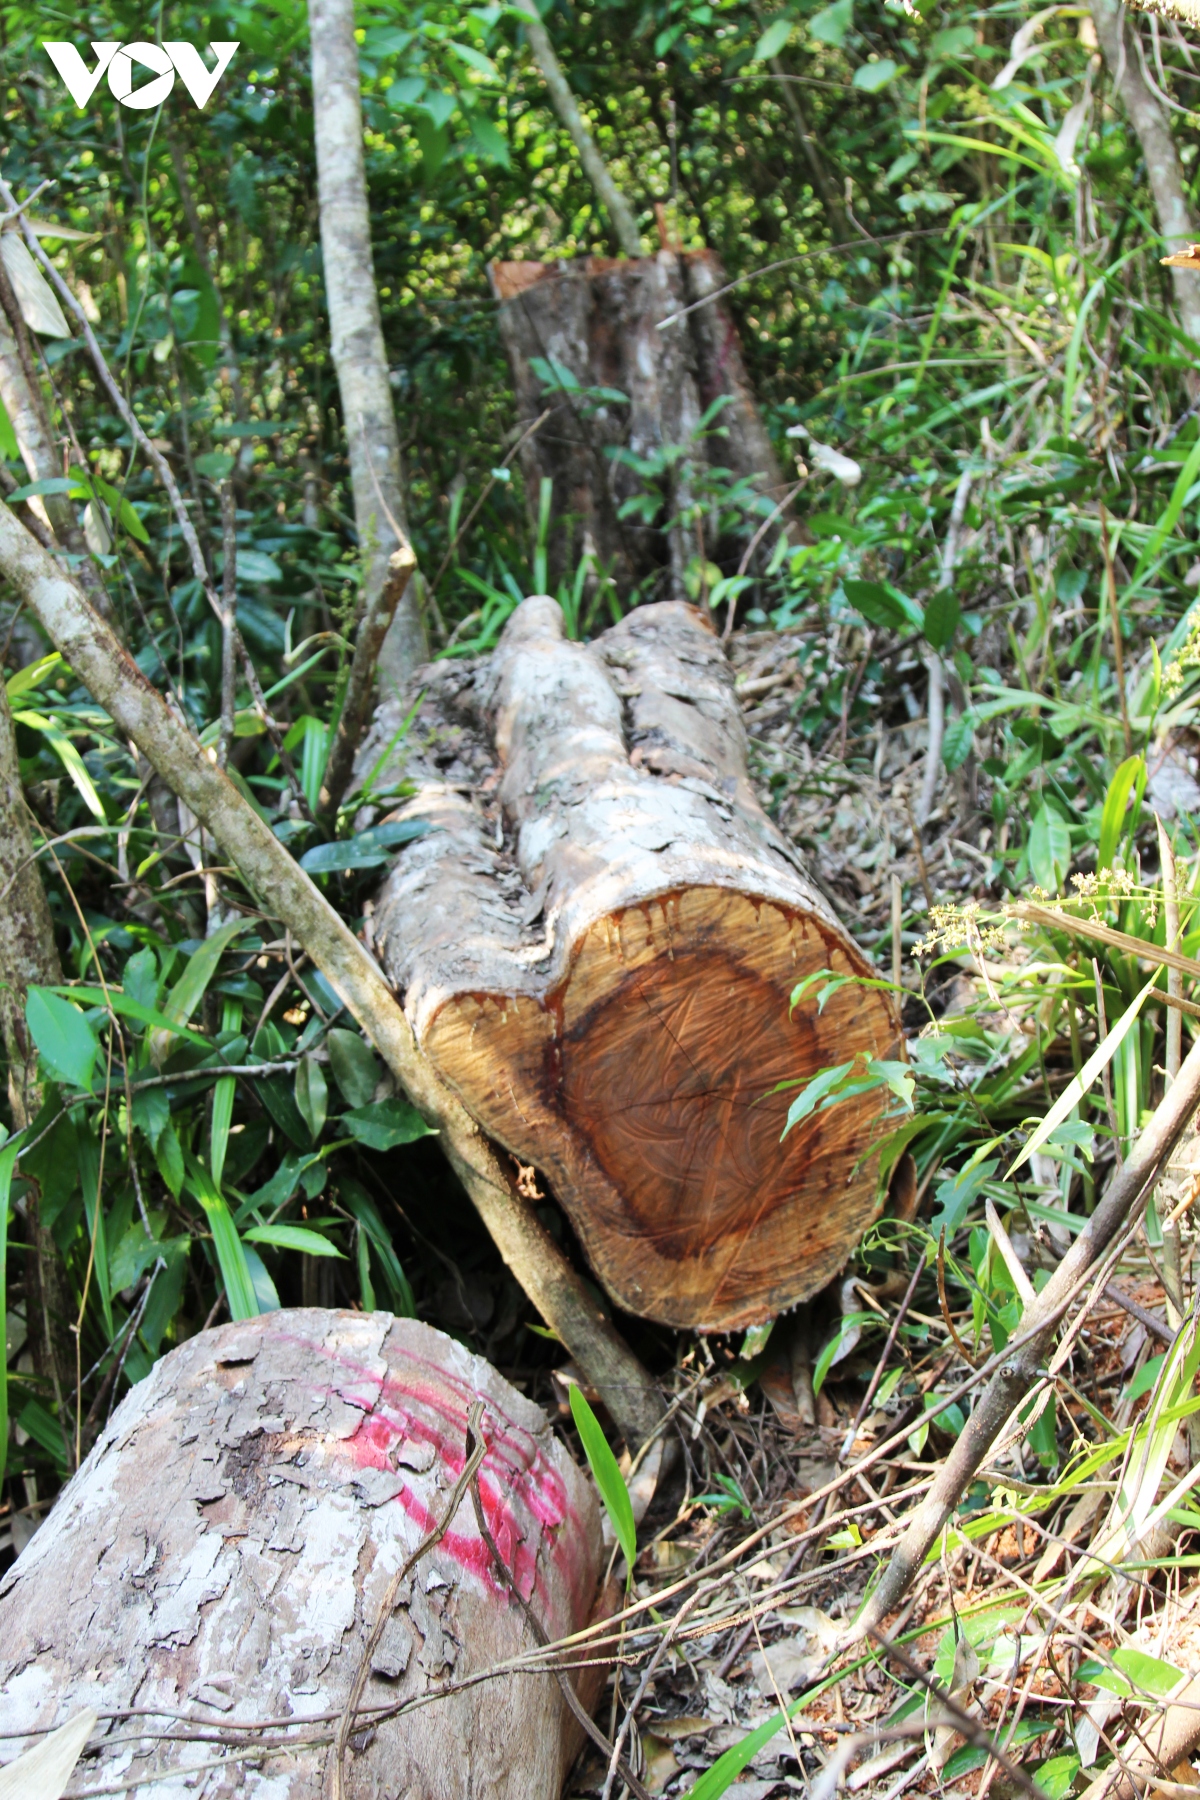 UBND tỉnh Bình Định yêu cầu làm rõ vụ phá rừng phòng hộ sau phản ánh của VOV